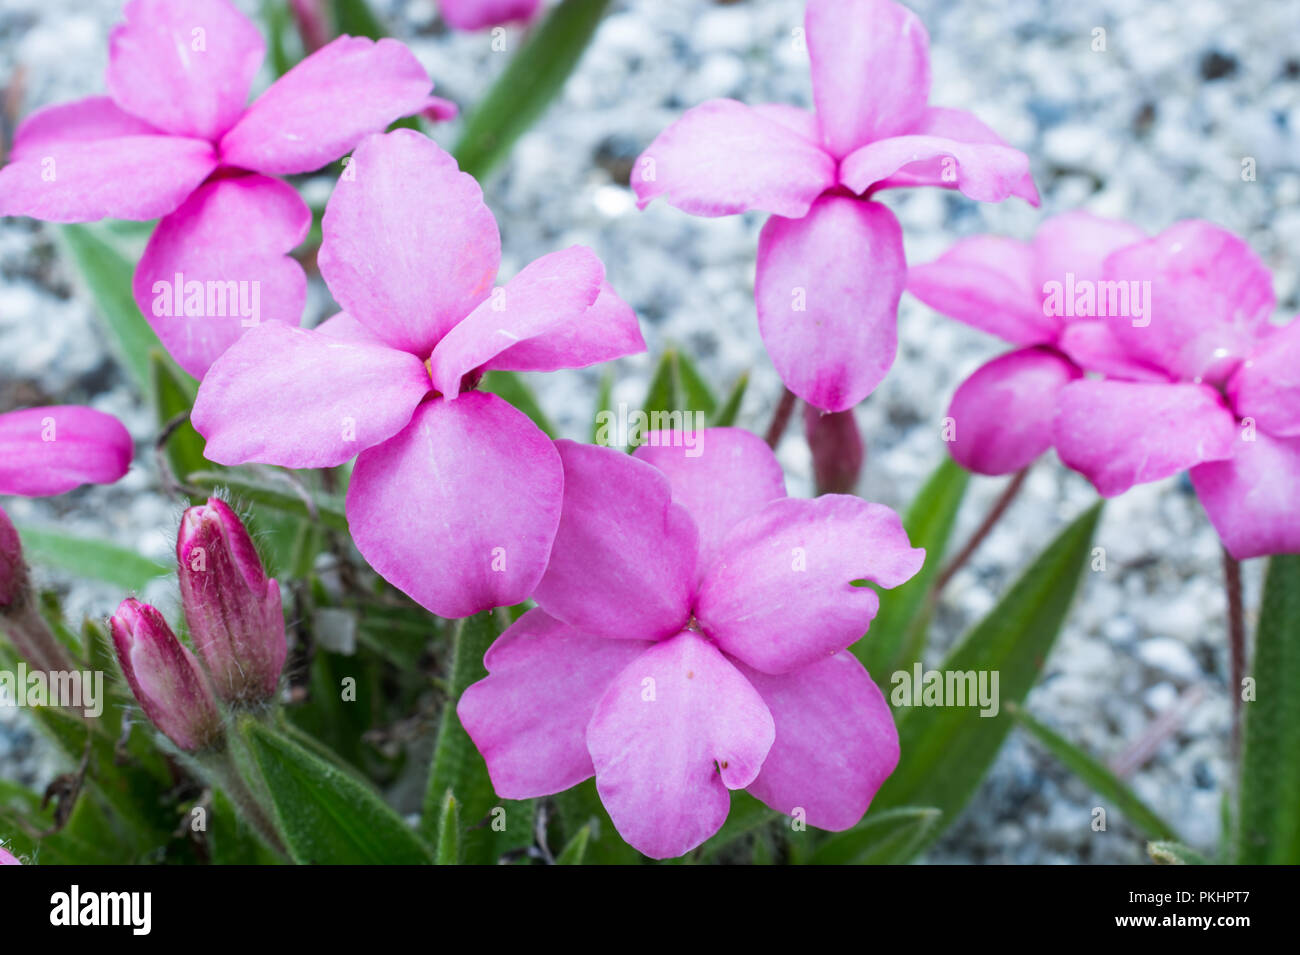 Rhodohypoxis in flower Stock Photo